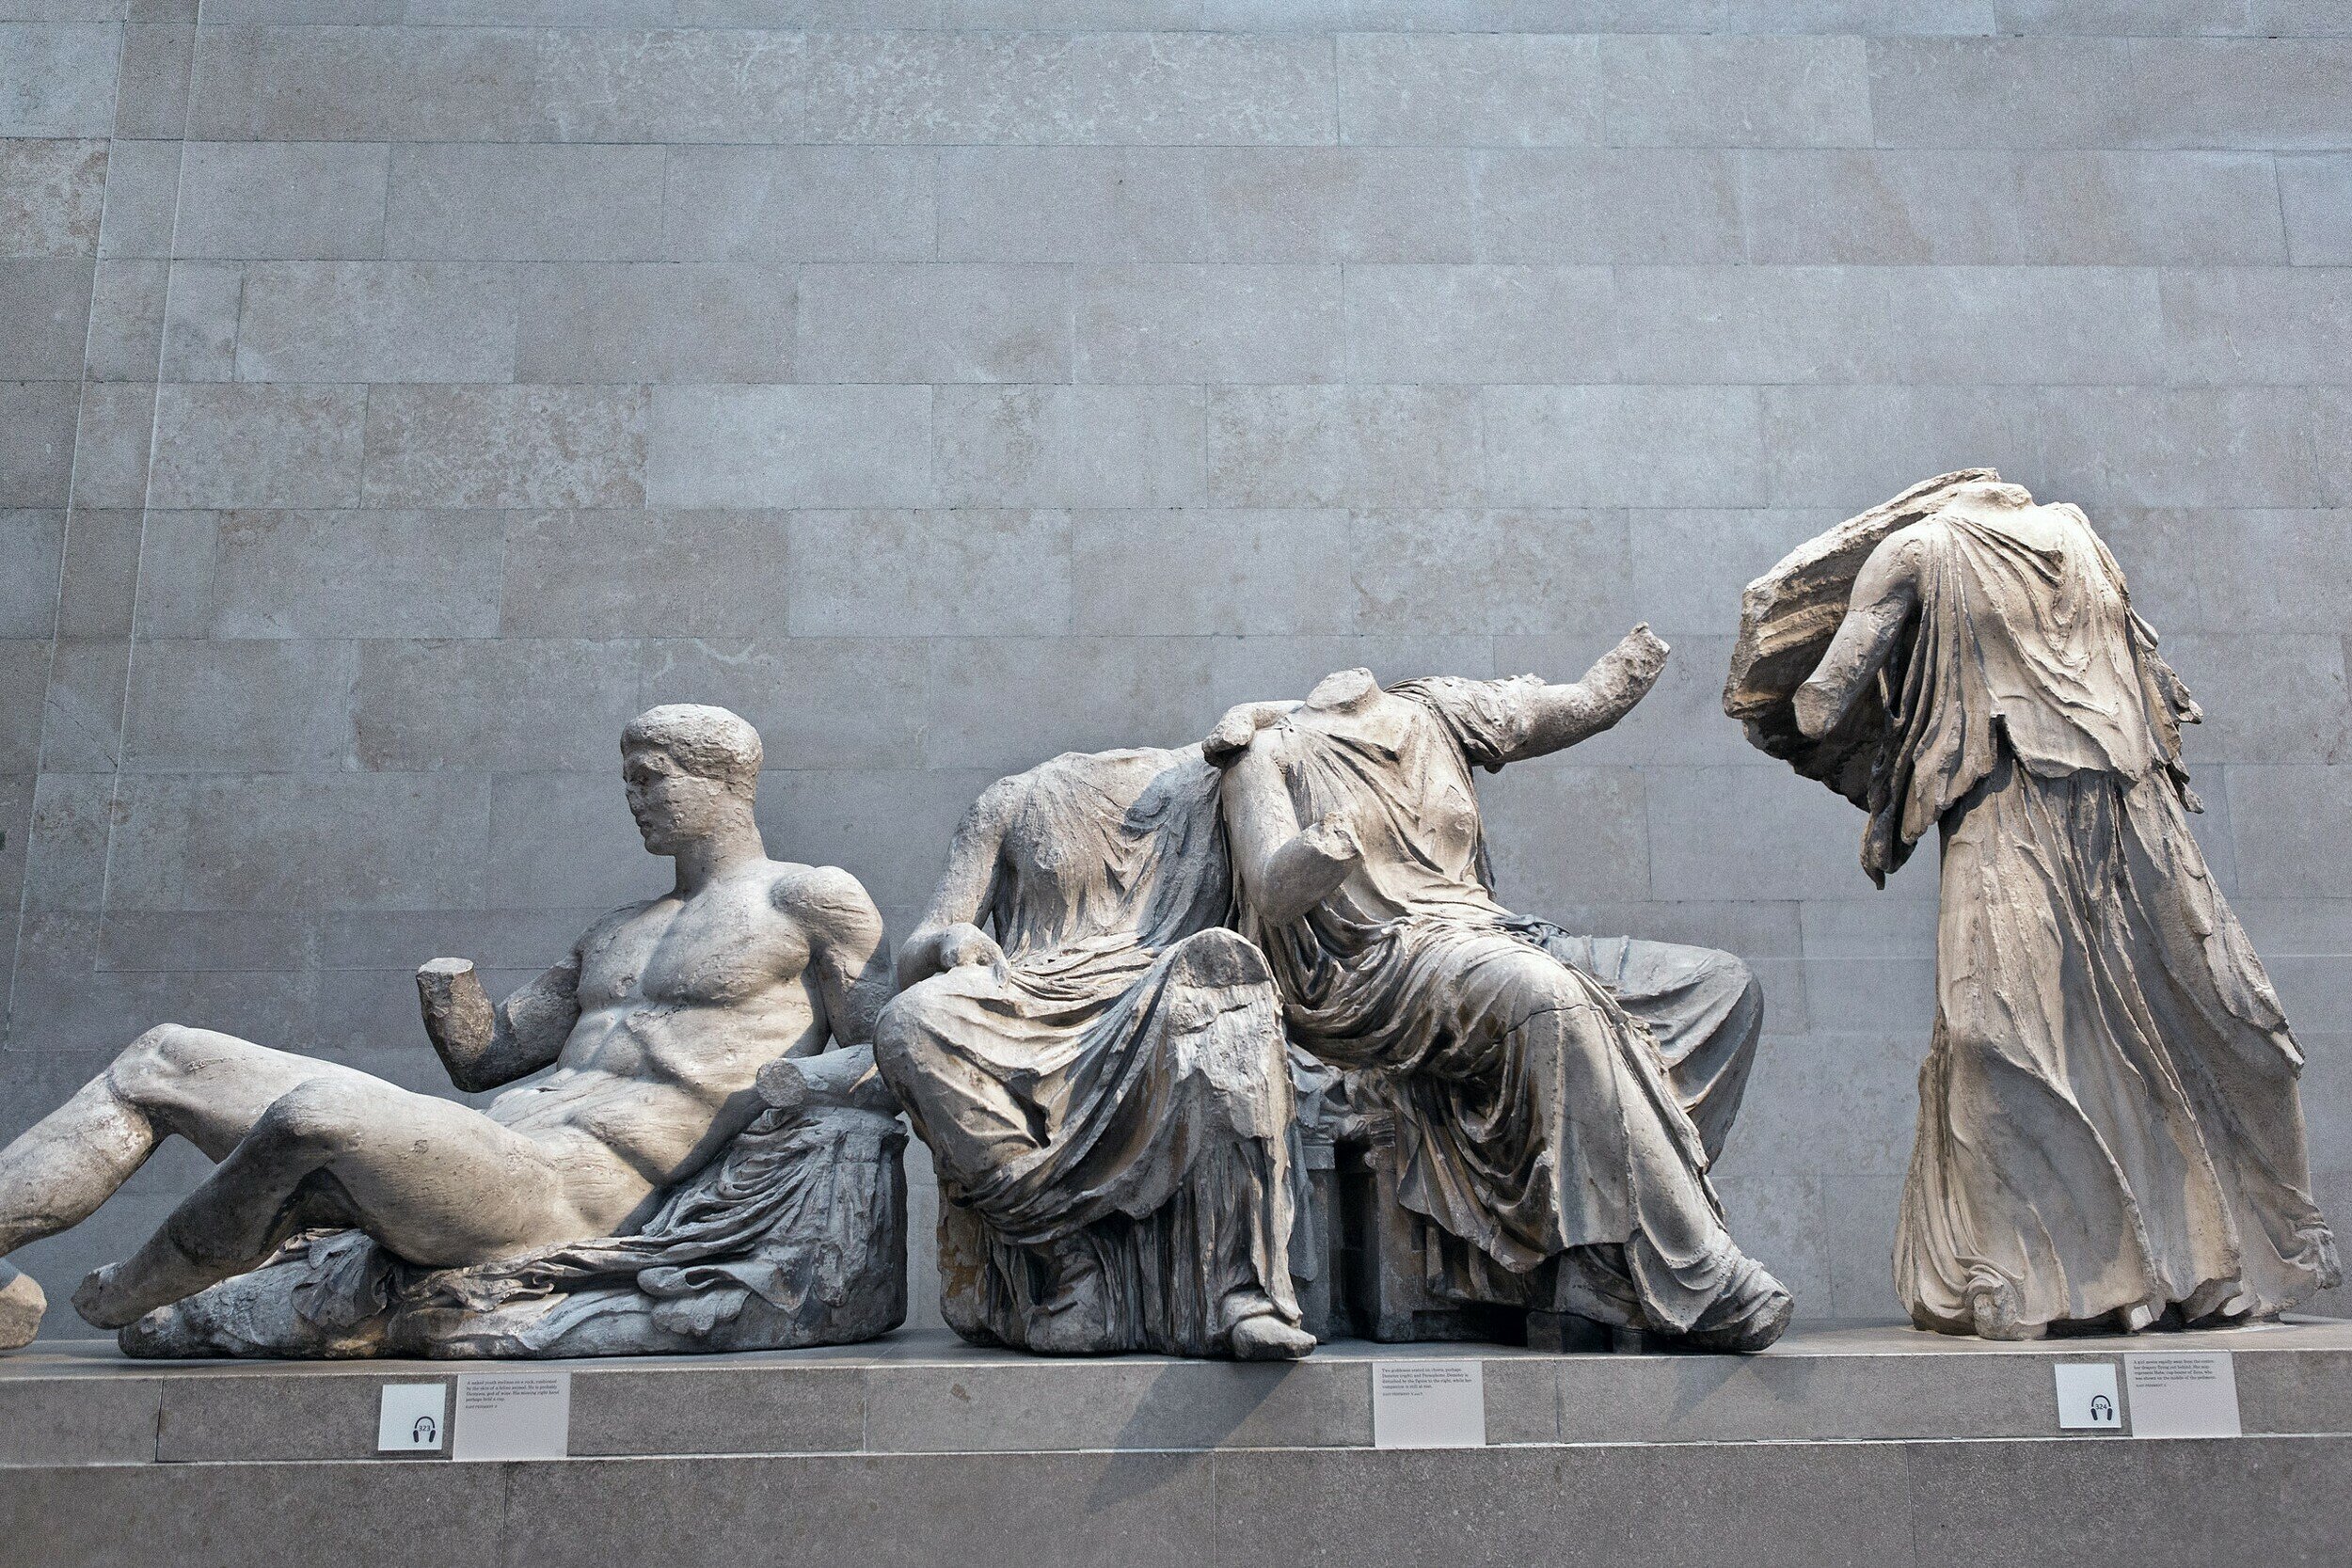 Πρόεδρος Βρετανικού Μουσείου: «Τα Γλυπτά του Παρθενώνα θα μπορούσαν να επιστραφούν προσωρινά στην Ελλάδα με ανταλλαγές»